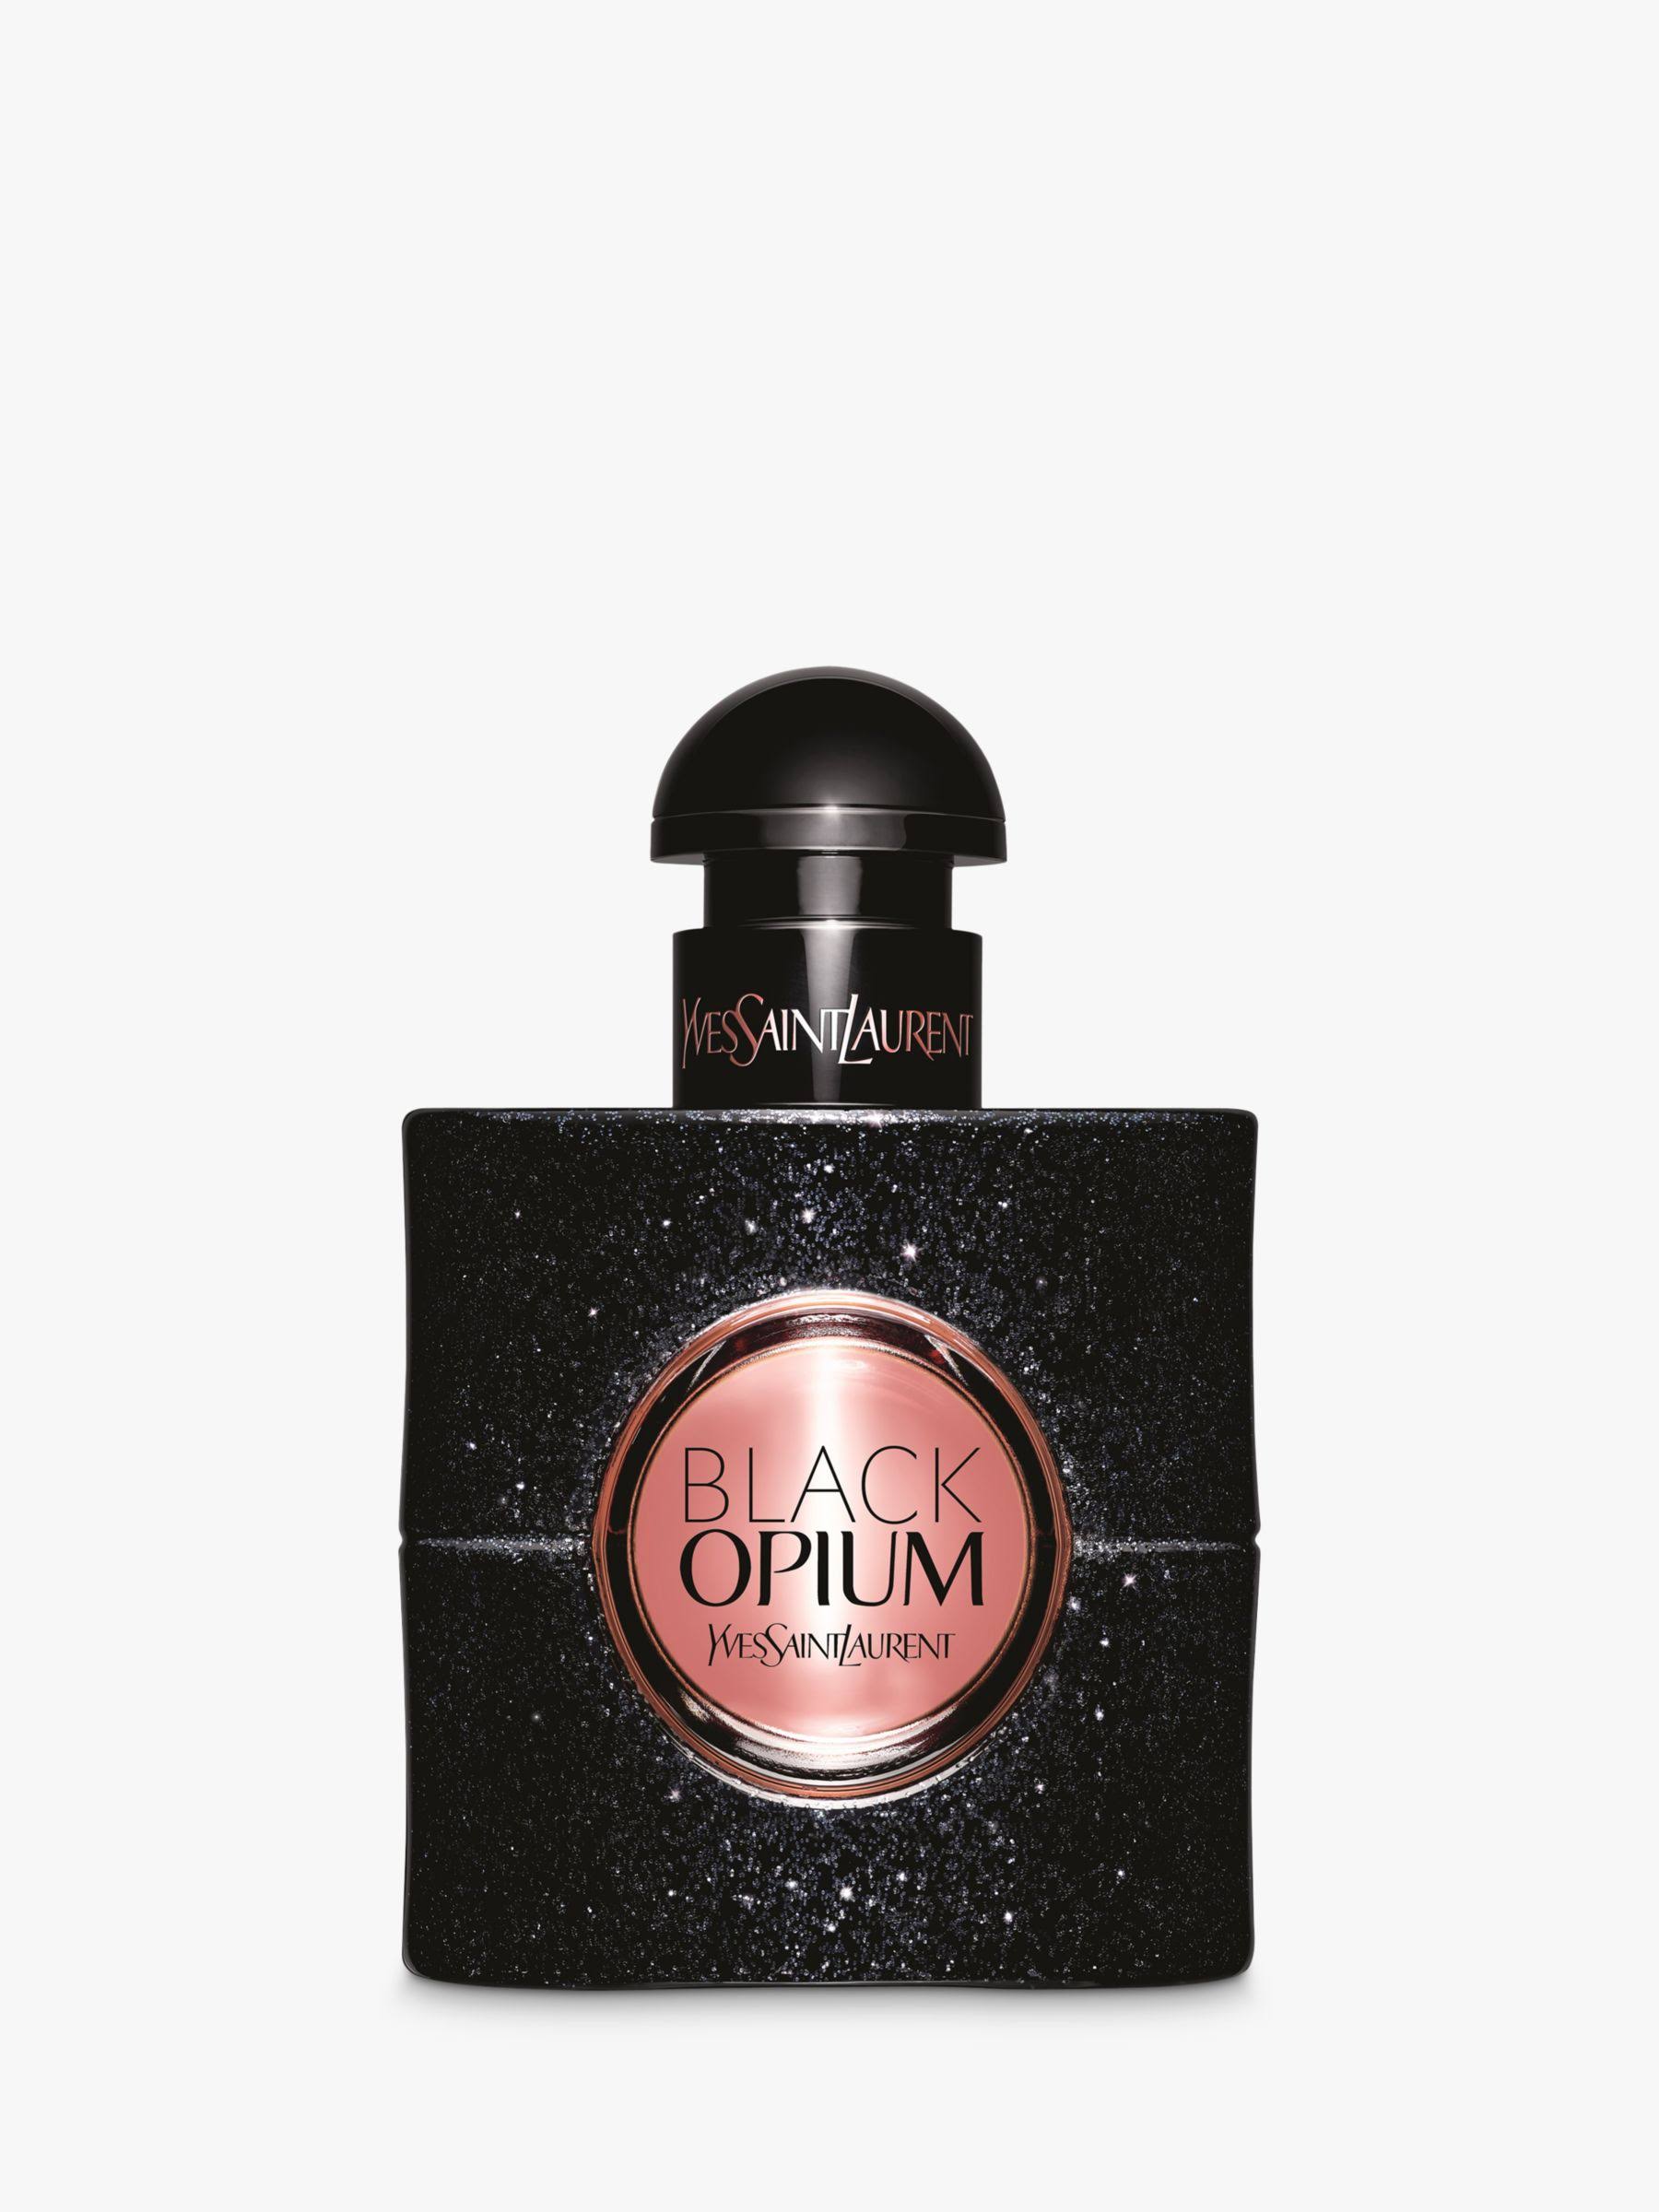 Yves Saint Laurent Eau de Parfum Natural Spray - Black Opium, 30ml